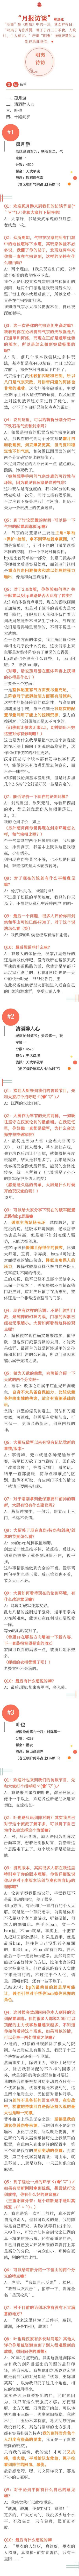 【汉家江湖2.0第一赛季月报】侠客bp数据＋门派前排采访 汉家前排成长之路٩( 'ω' )و - 第14张